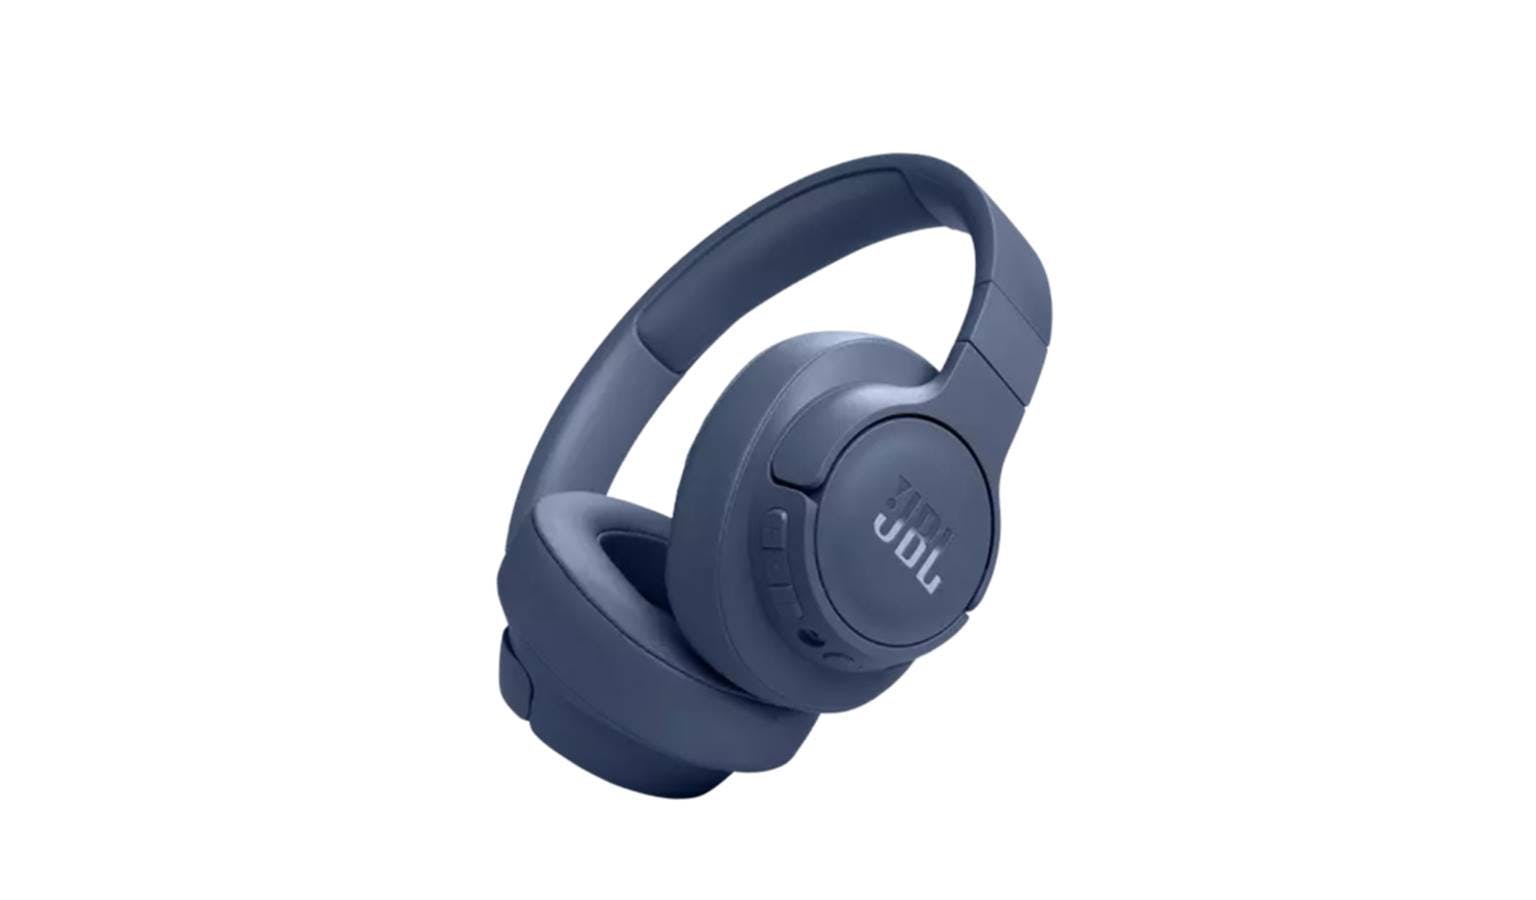 JBL displays their JBL Tune 770 NC headphones as sound of the